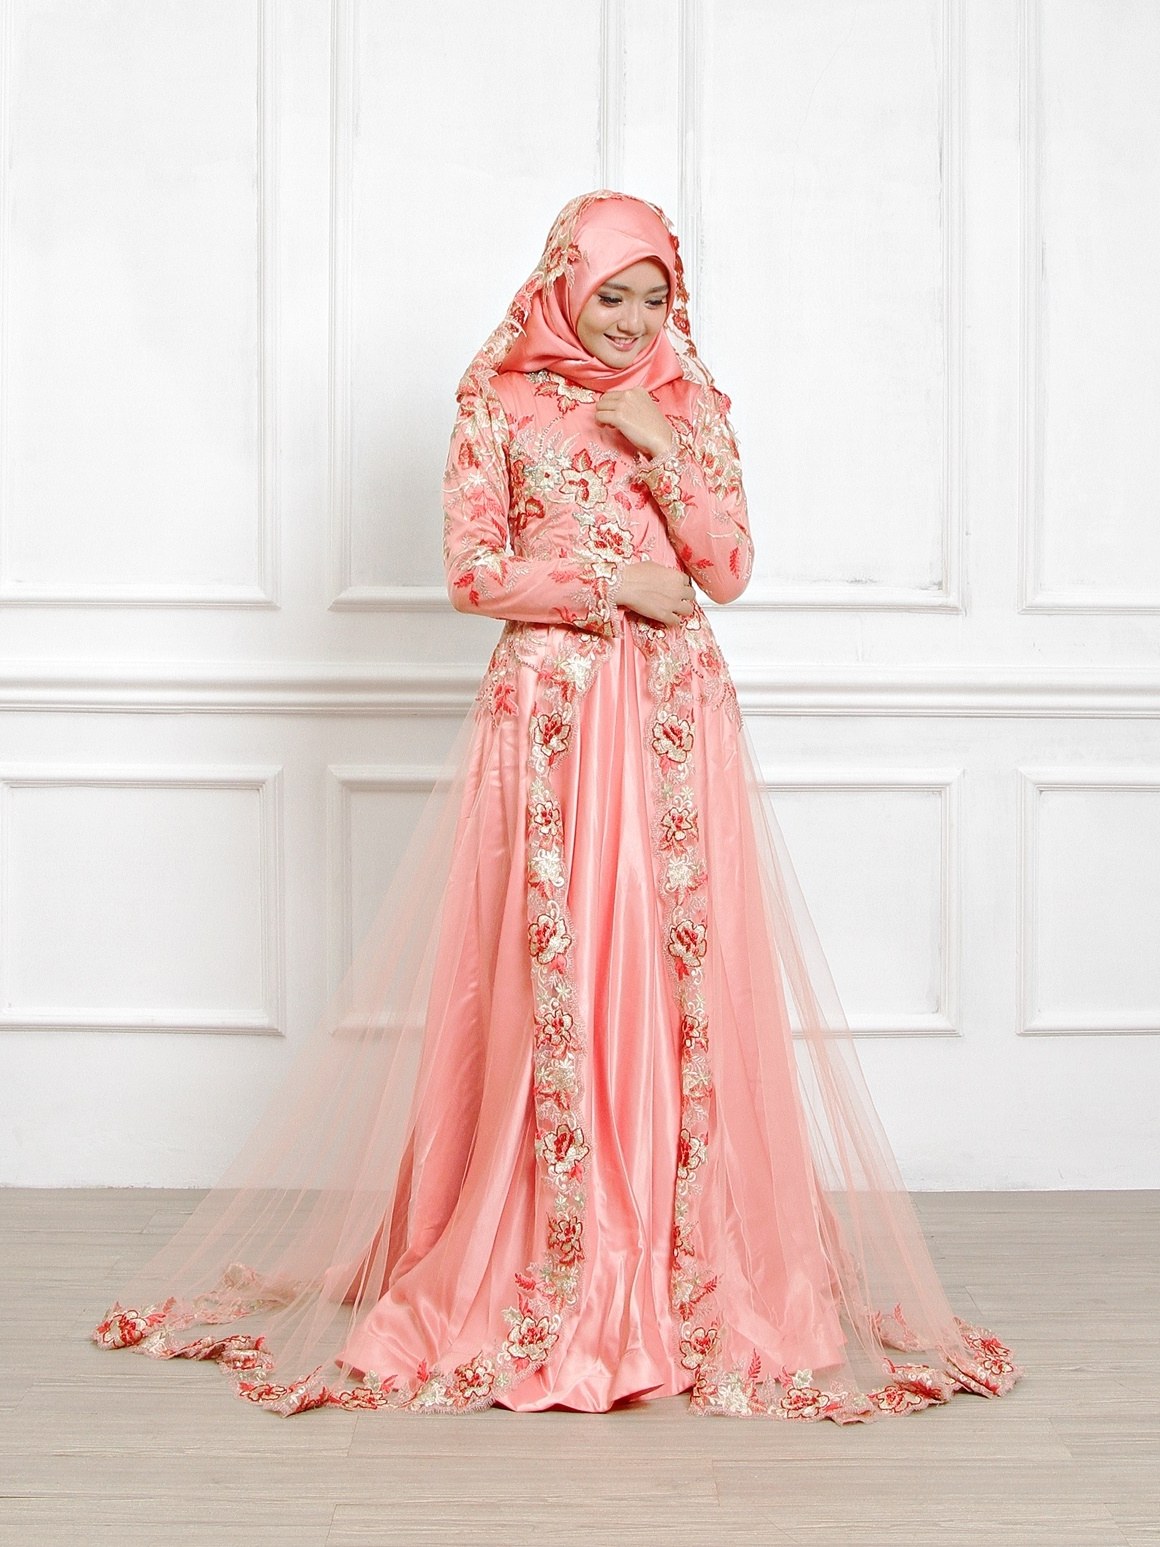 Bentuk Sewa Gaun Pengantin Muslimah Jogja S1du Sewa Perdana Baju Pengantin Muslimah Jogja Gaun Pengantin